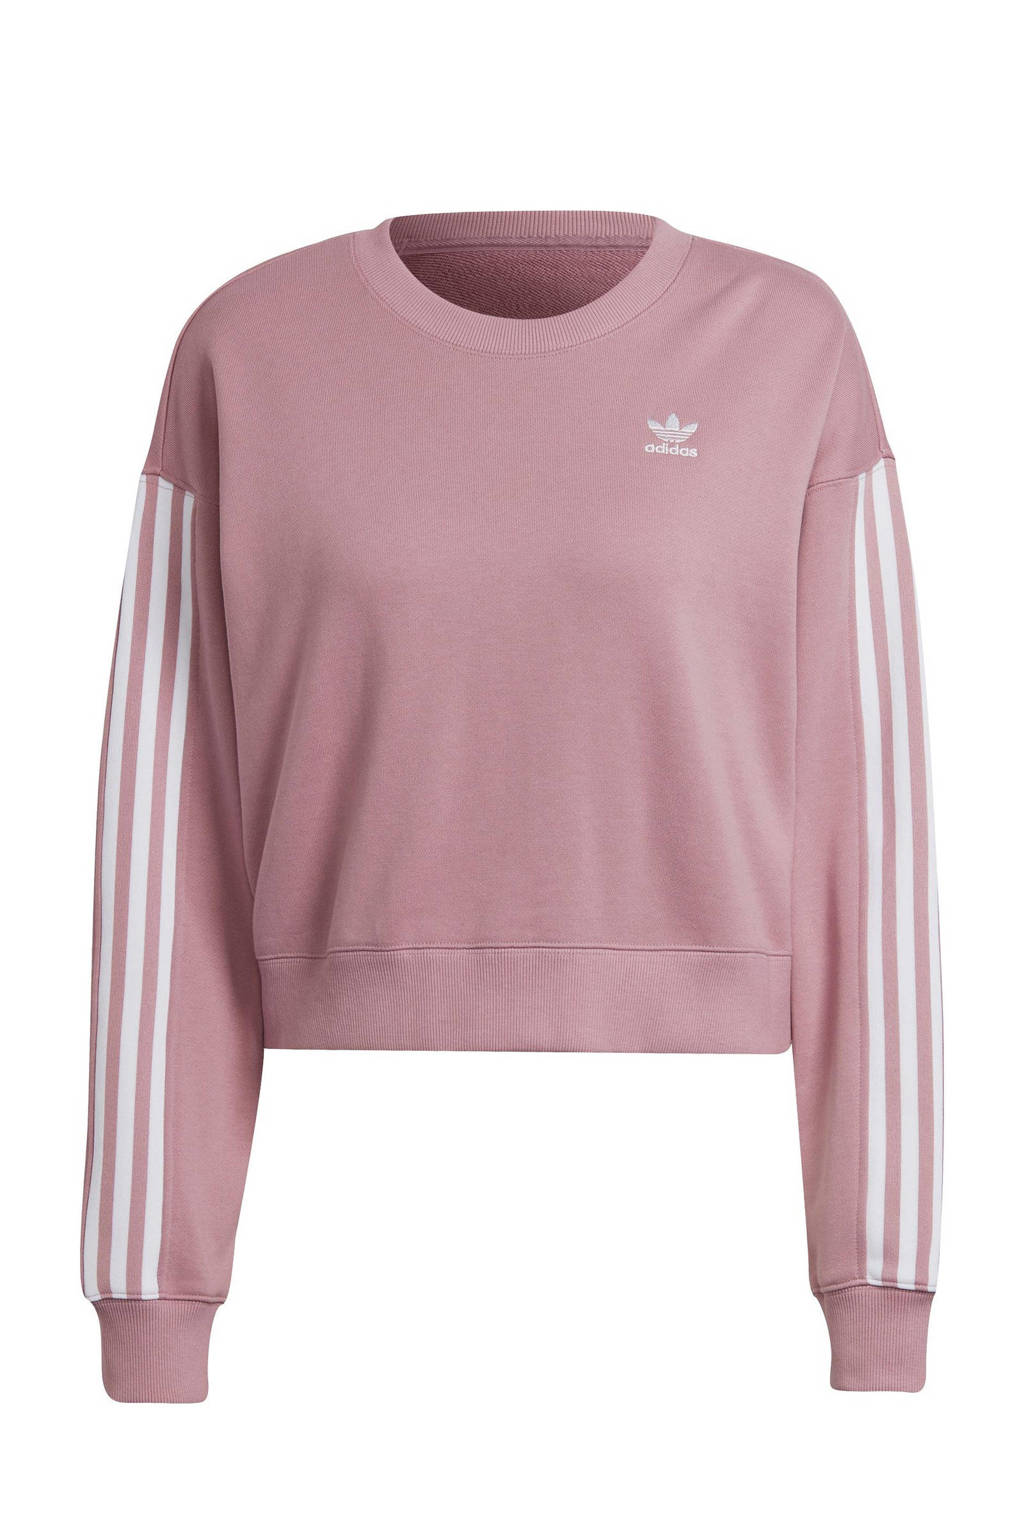 Roze en witte dames adidas Originals sweater van katoen met lange mouwen, ronde hals en geribde boorden